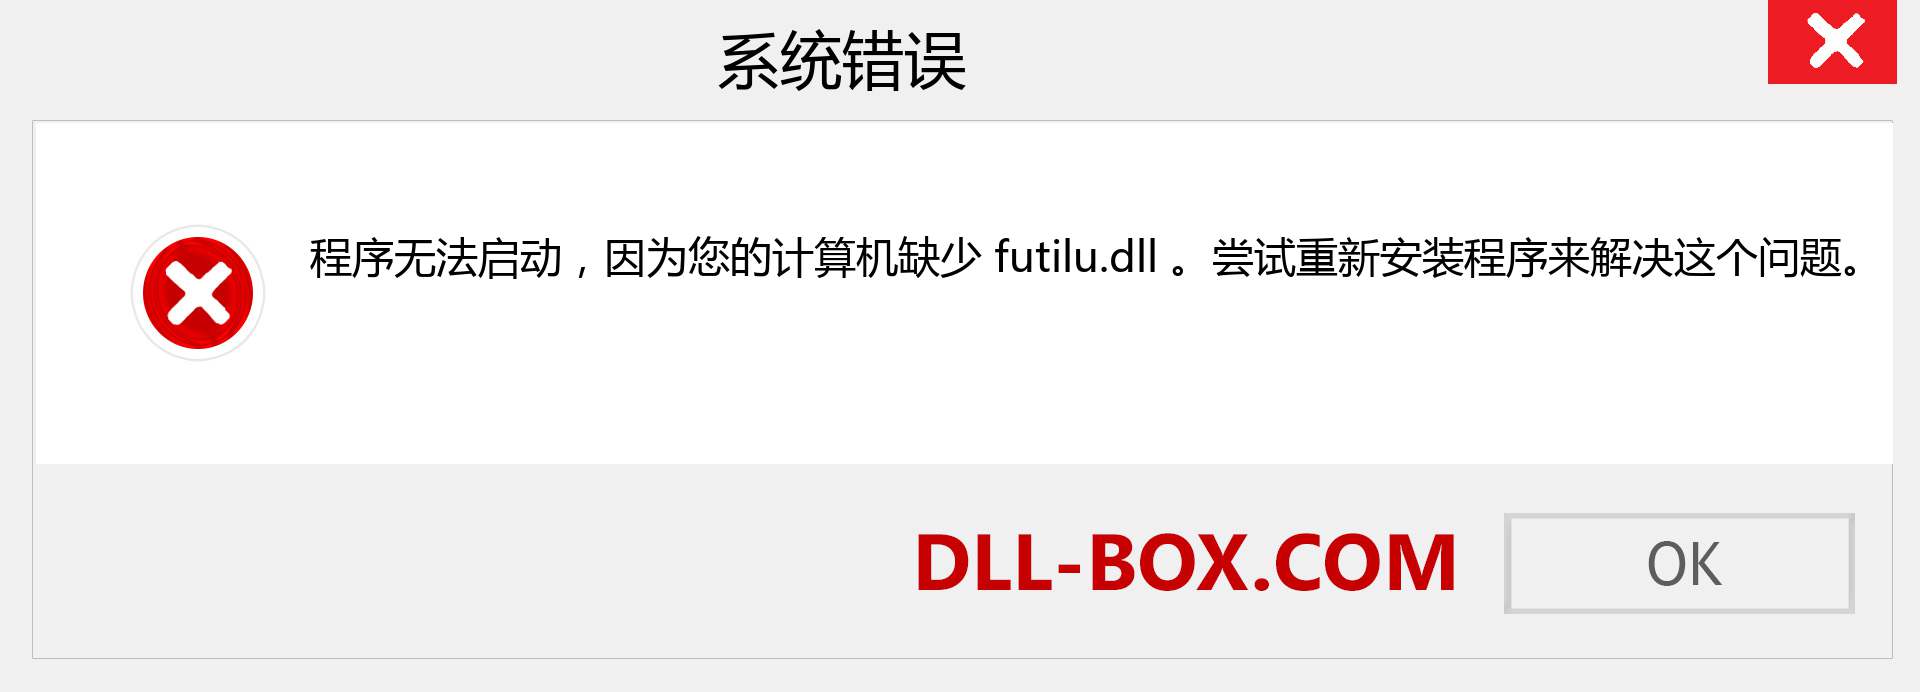 futilu.dll 文件丢失？。 适用于 Windows 7、8、10 的下载 - 修复 Windows、照片、图像上的 futilu dll 丢失错误